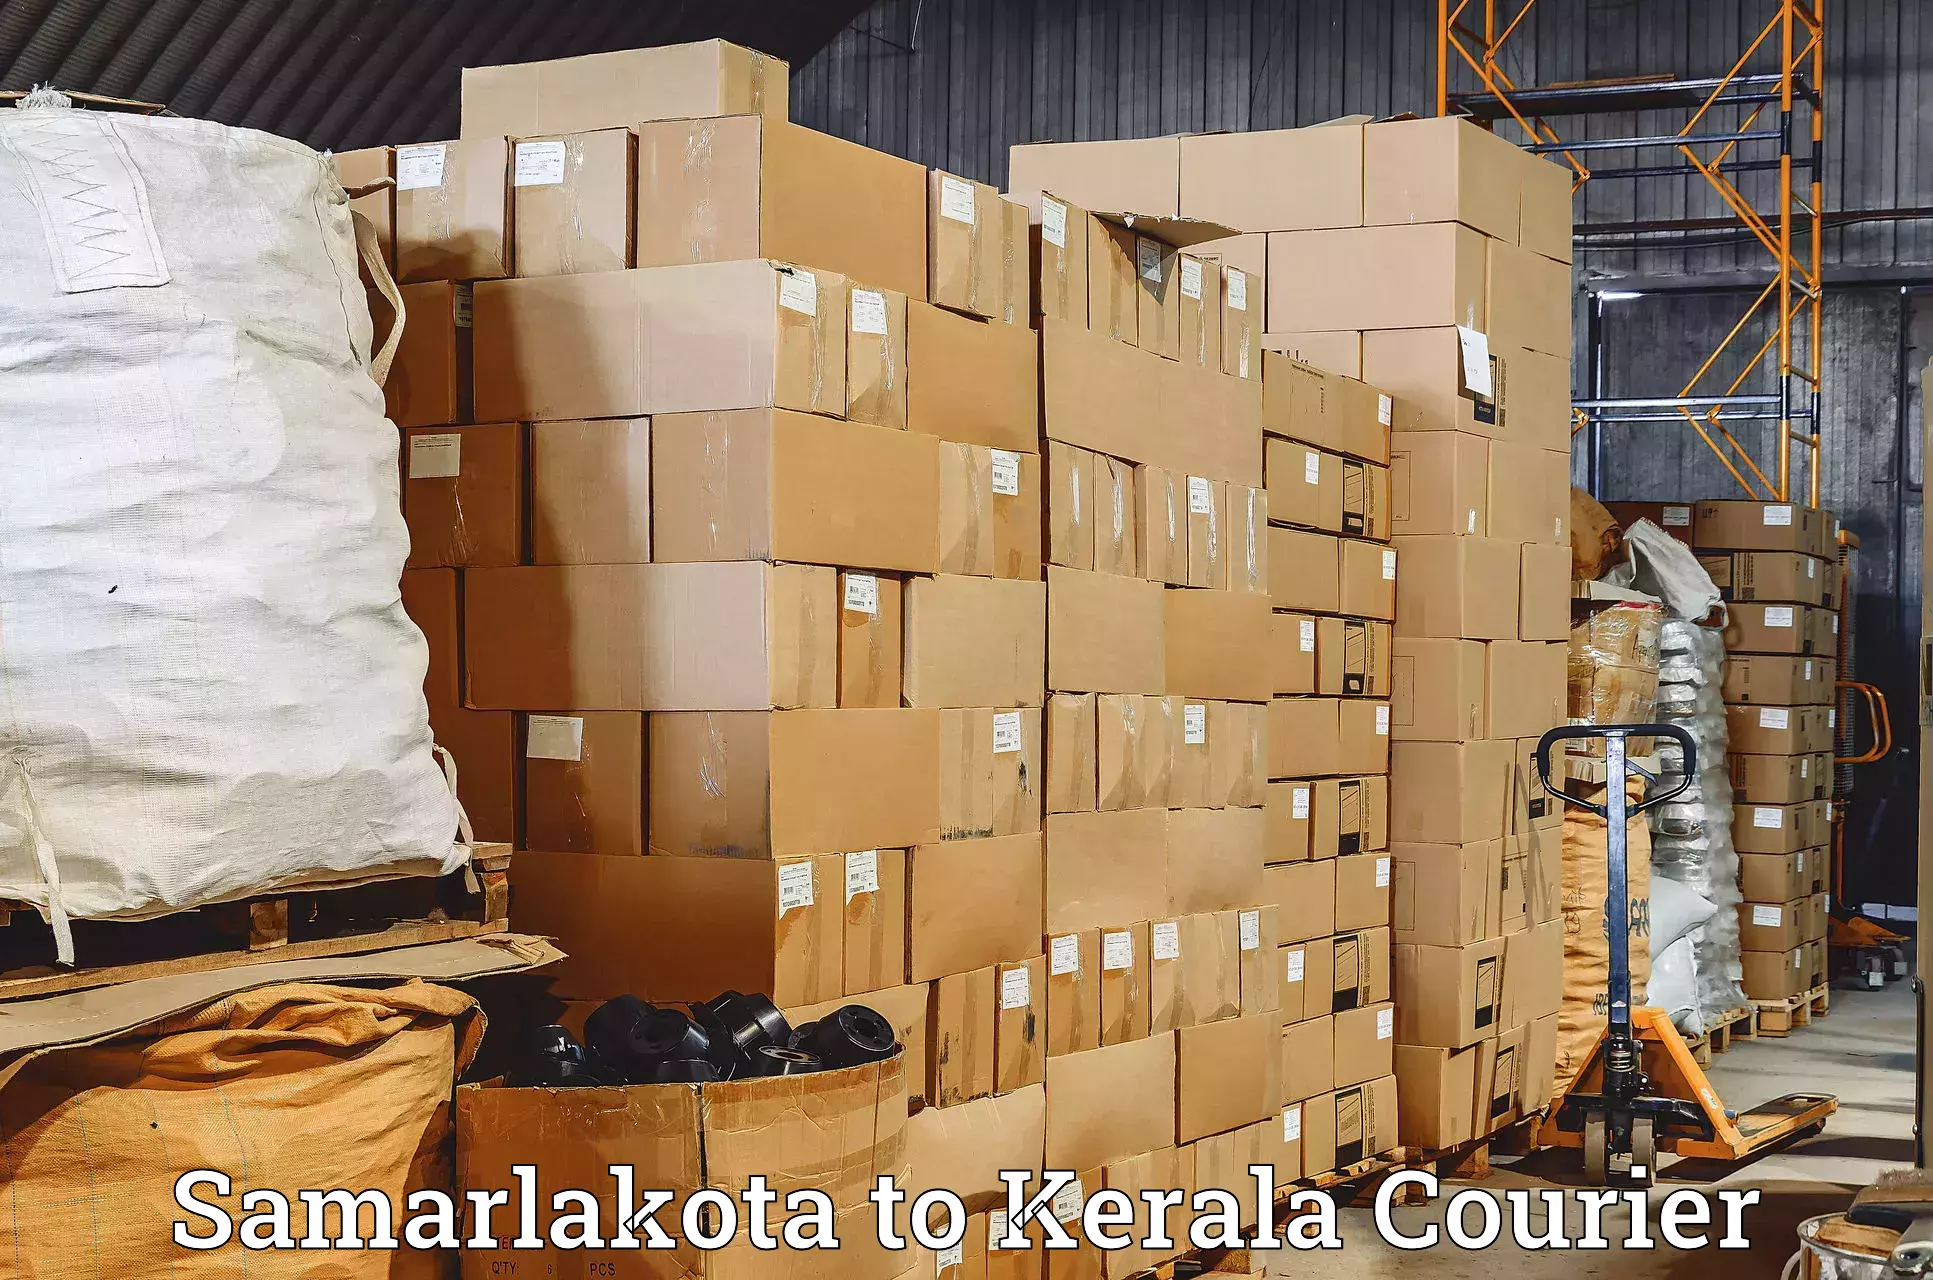 24-hour courier service Samarlakota to Shoranur